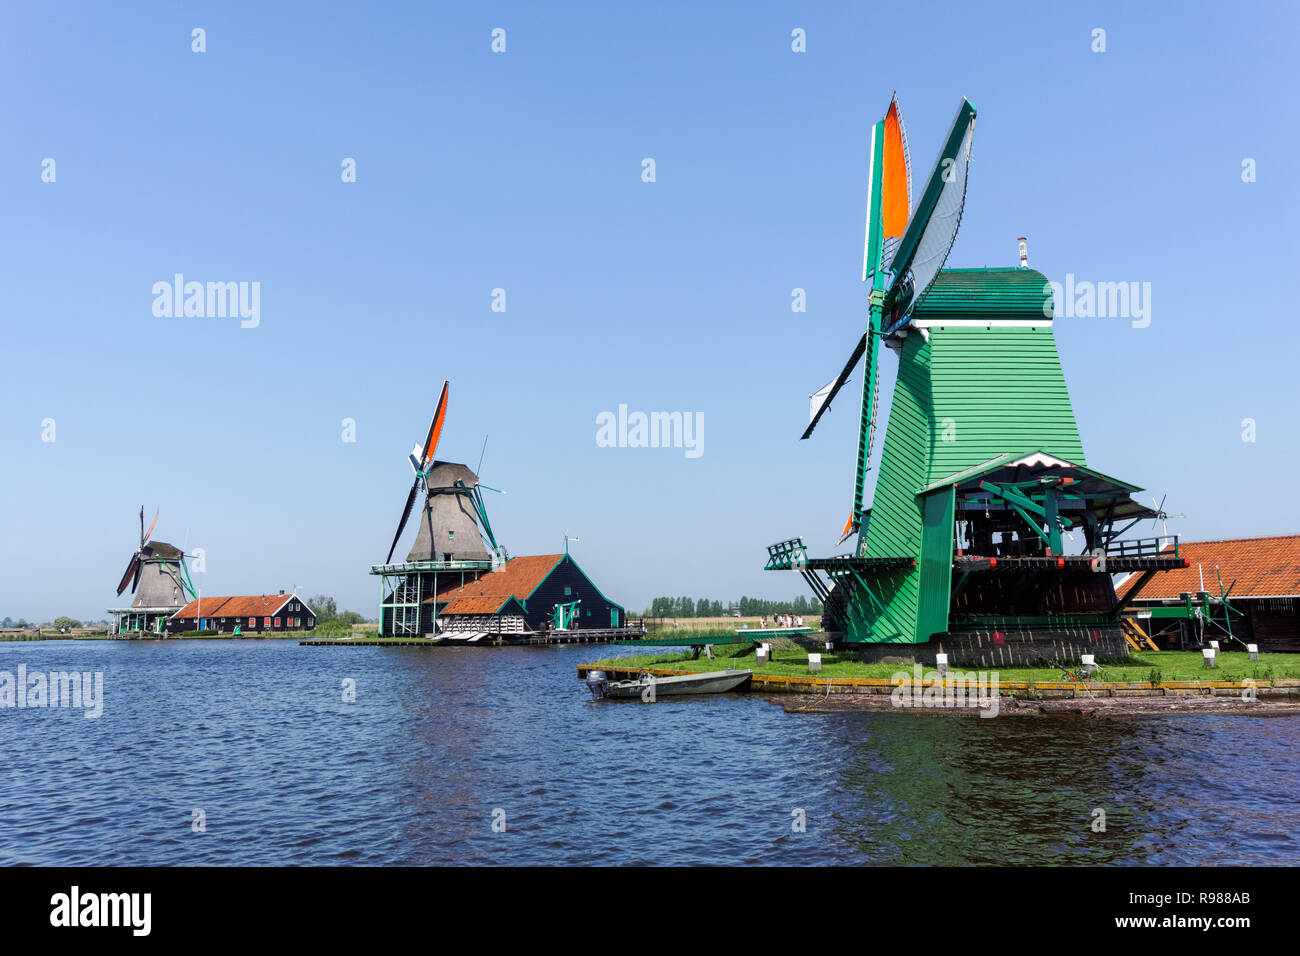 Dutch windmills at Zaanse Schans in Netherlands Stock Photo